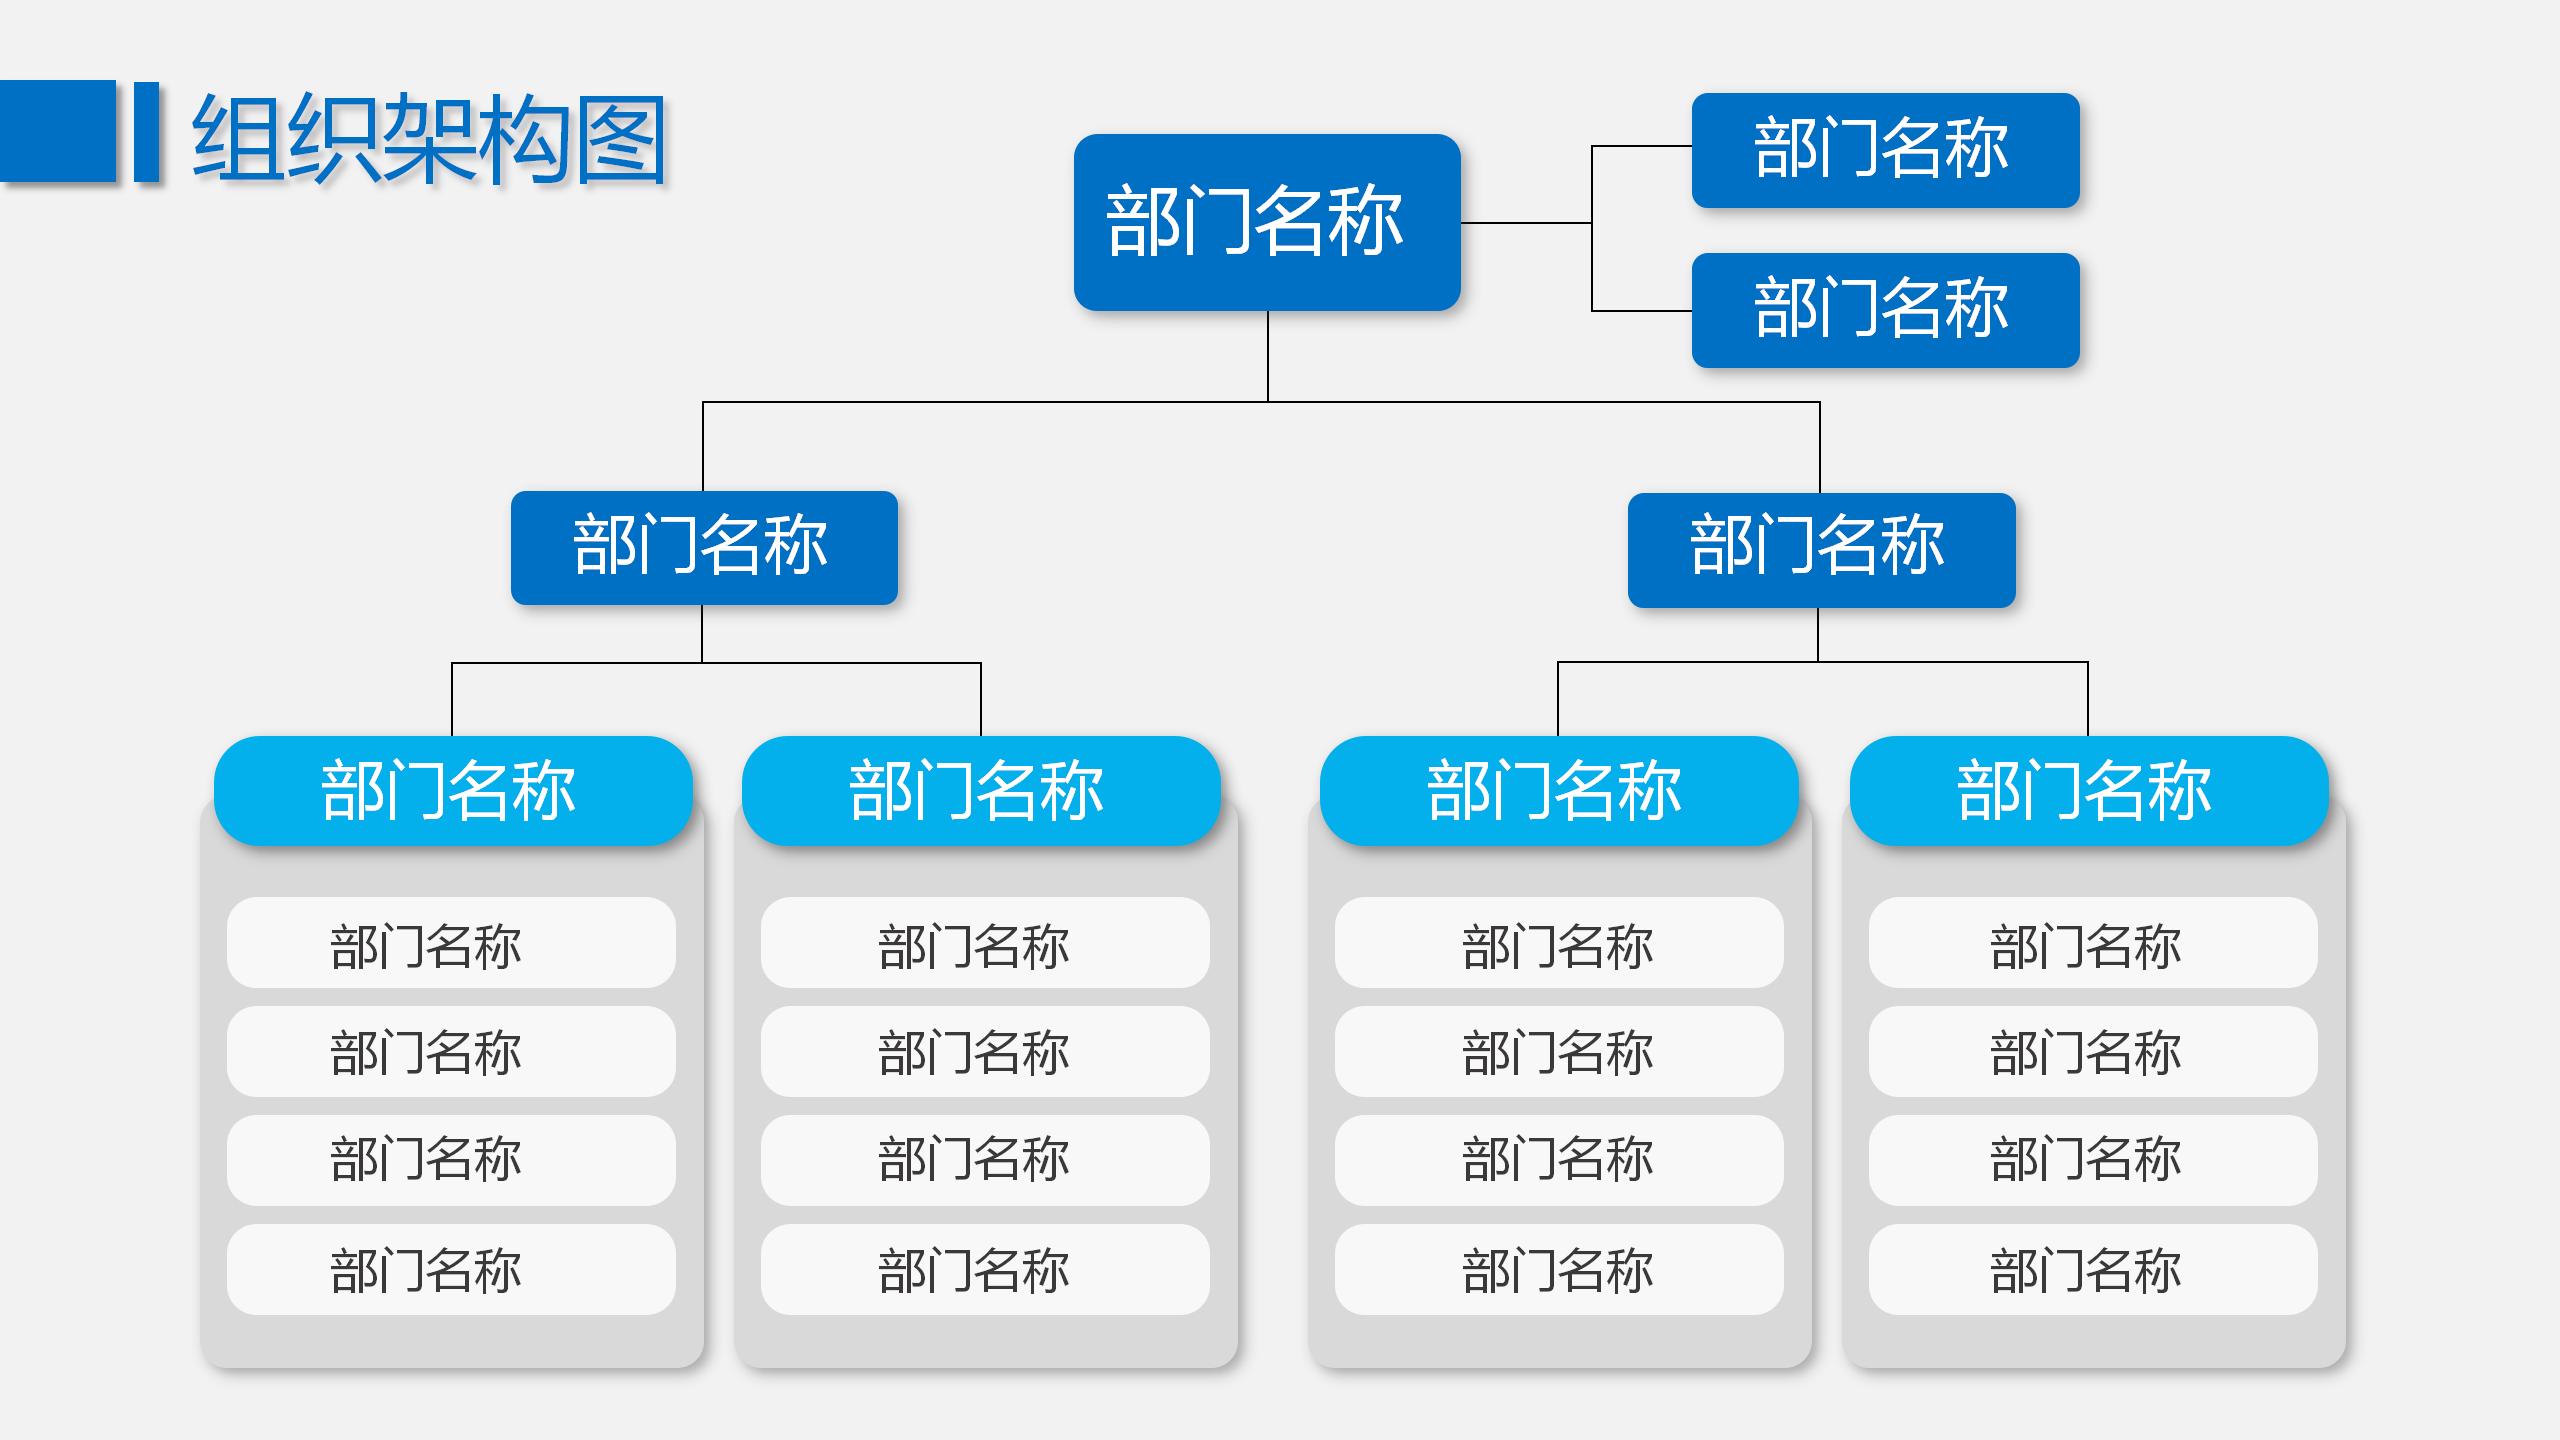 23 蓝色简约企业组织架构图PPT模板_05.jpg